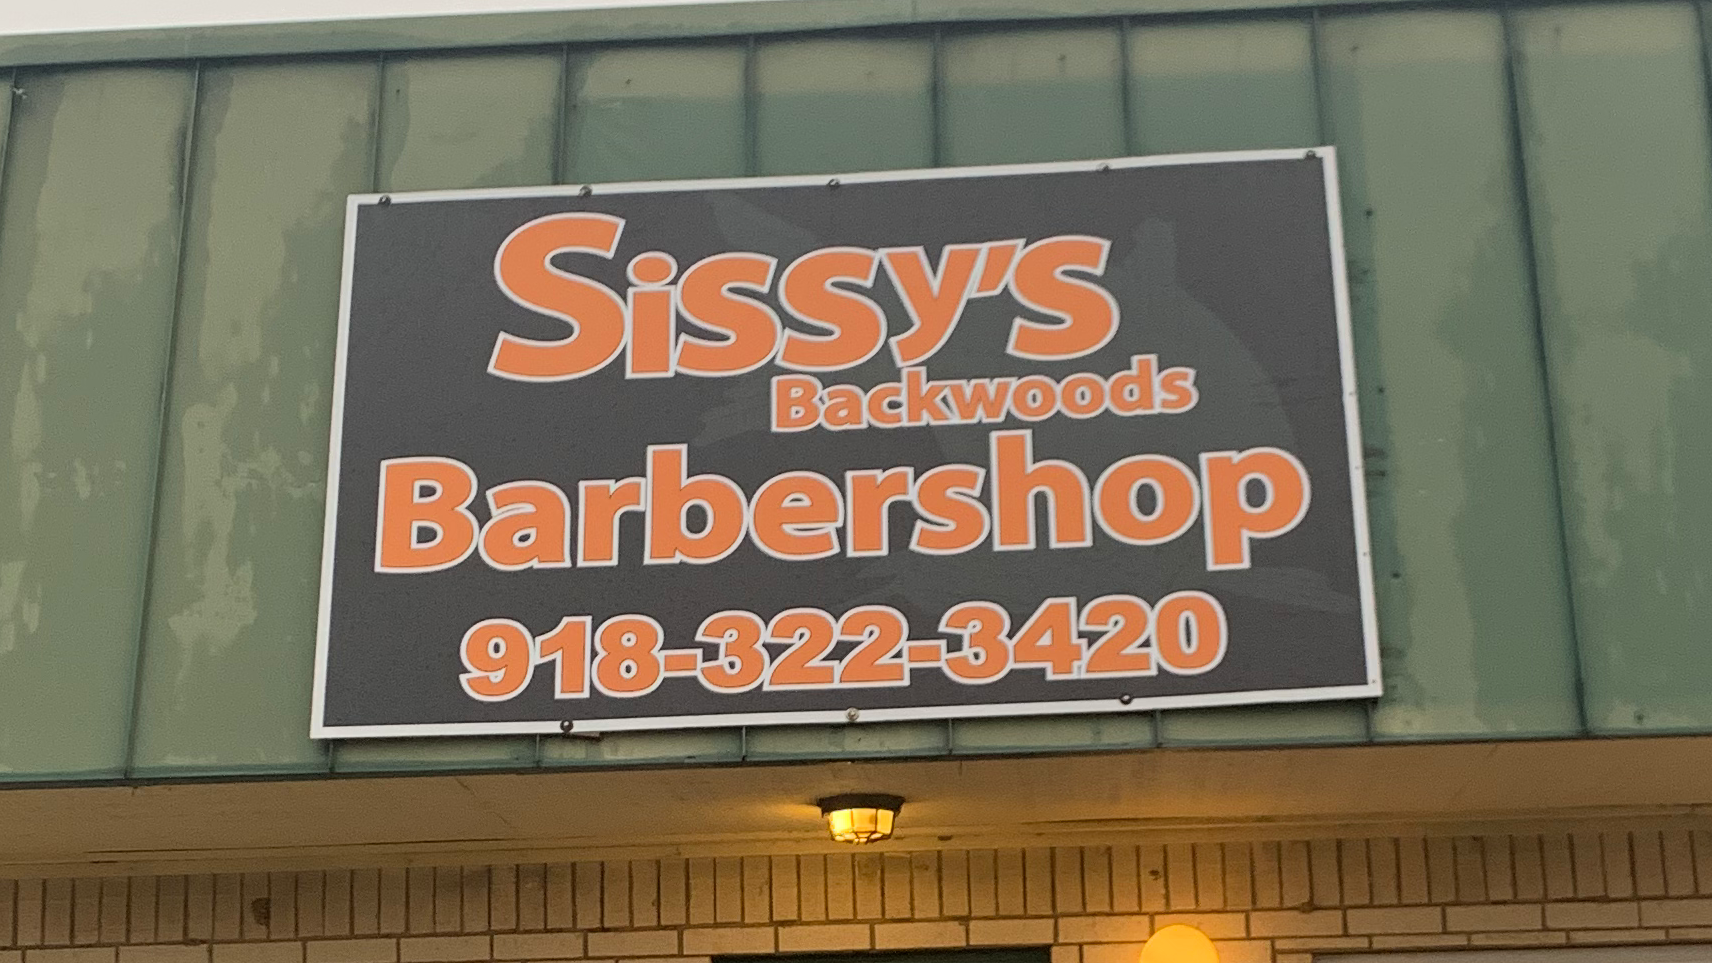 Sissy's Backwoods Barbershop